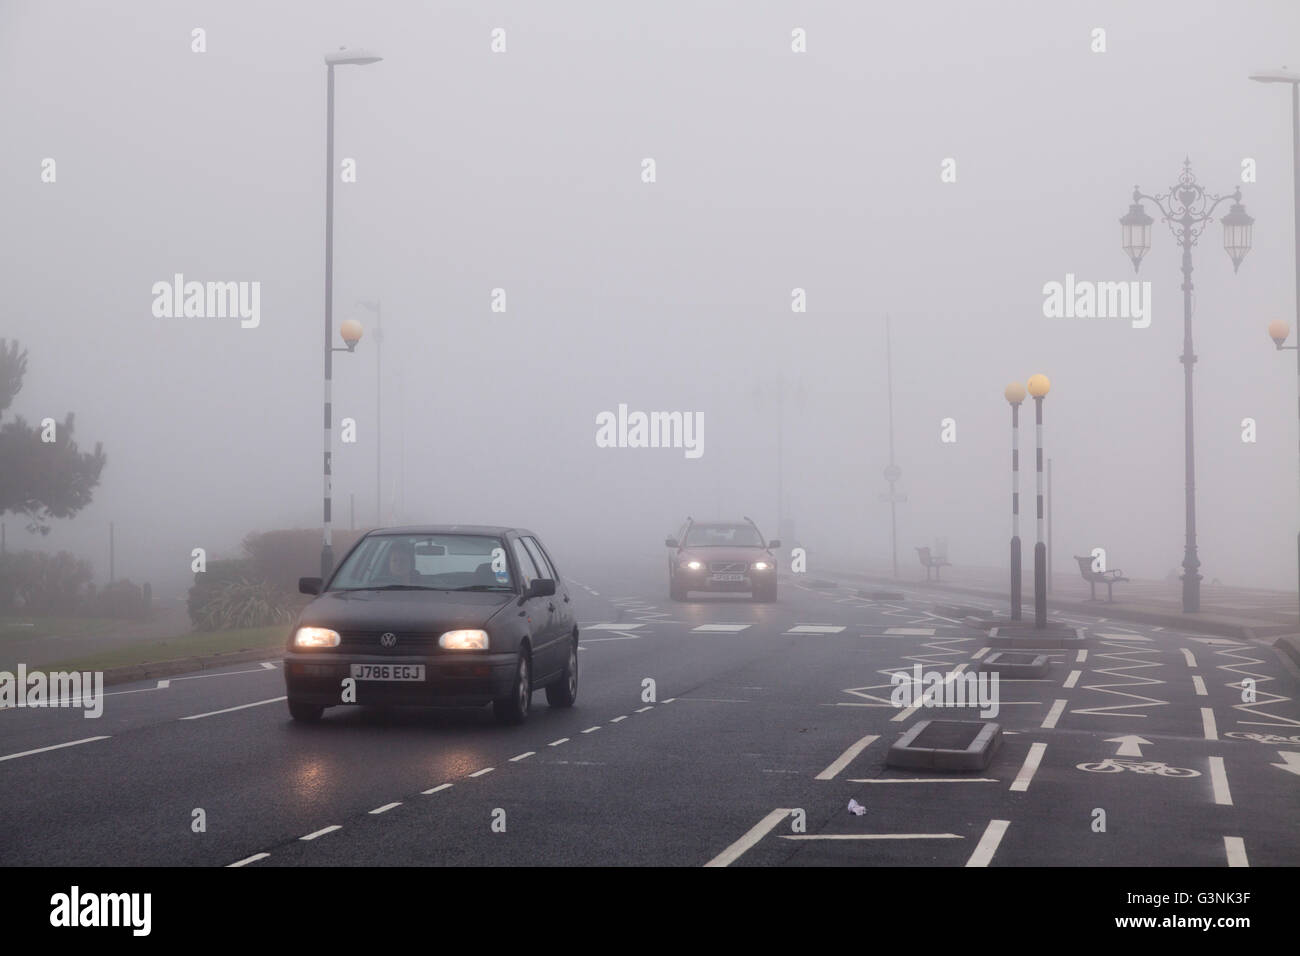 Autos Reisen im urbanen Umfeld mit Fahrbahnmarkierungen an einem nebeligen Tag mit Licht, Portsmouth, Hampshire, England Stockfoto